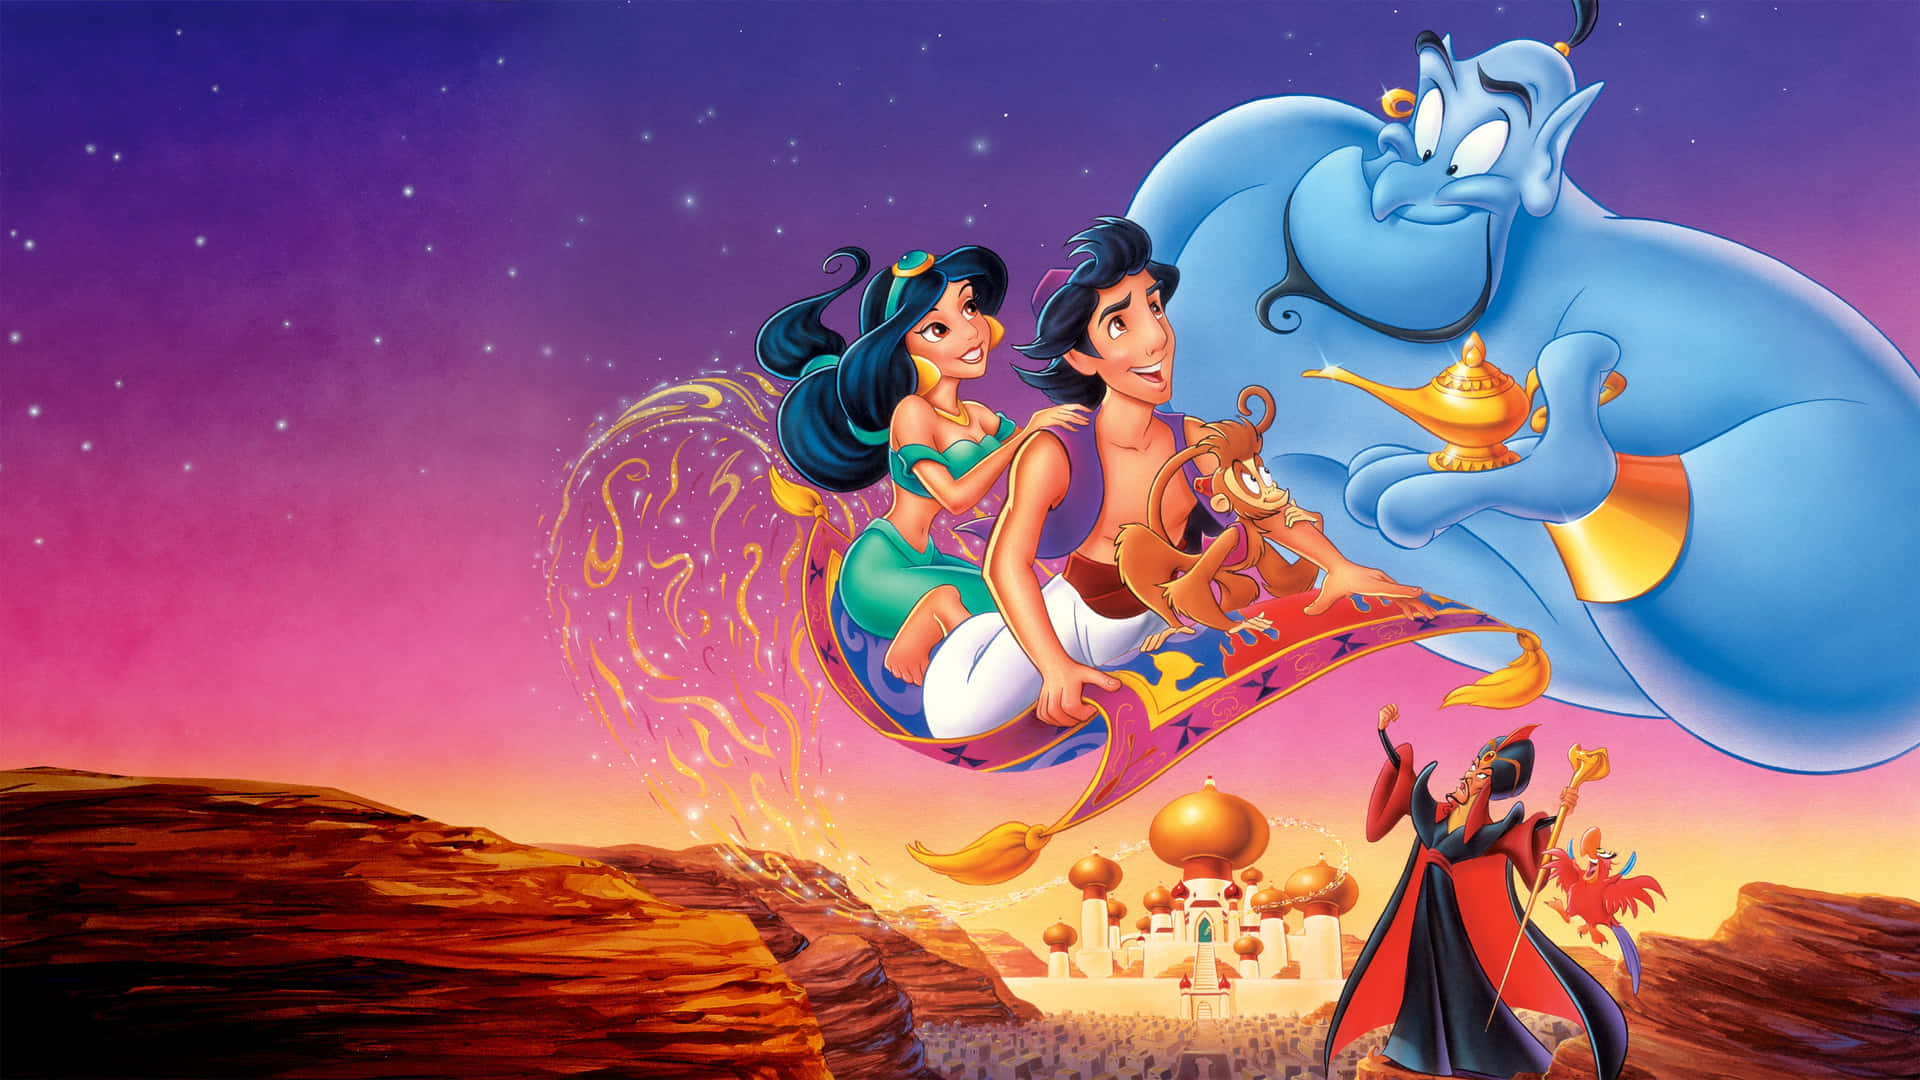 Følgmed Aladdin Og Prinsesse Jasmine På En Magisk Rejse!